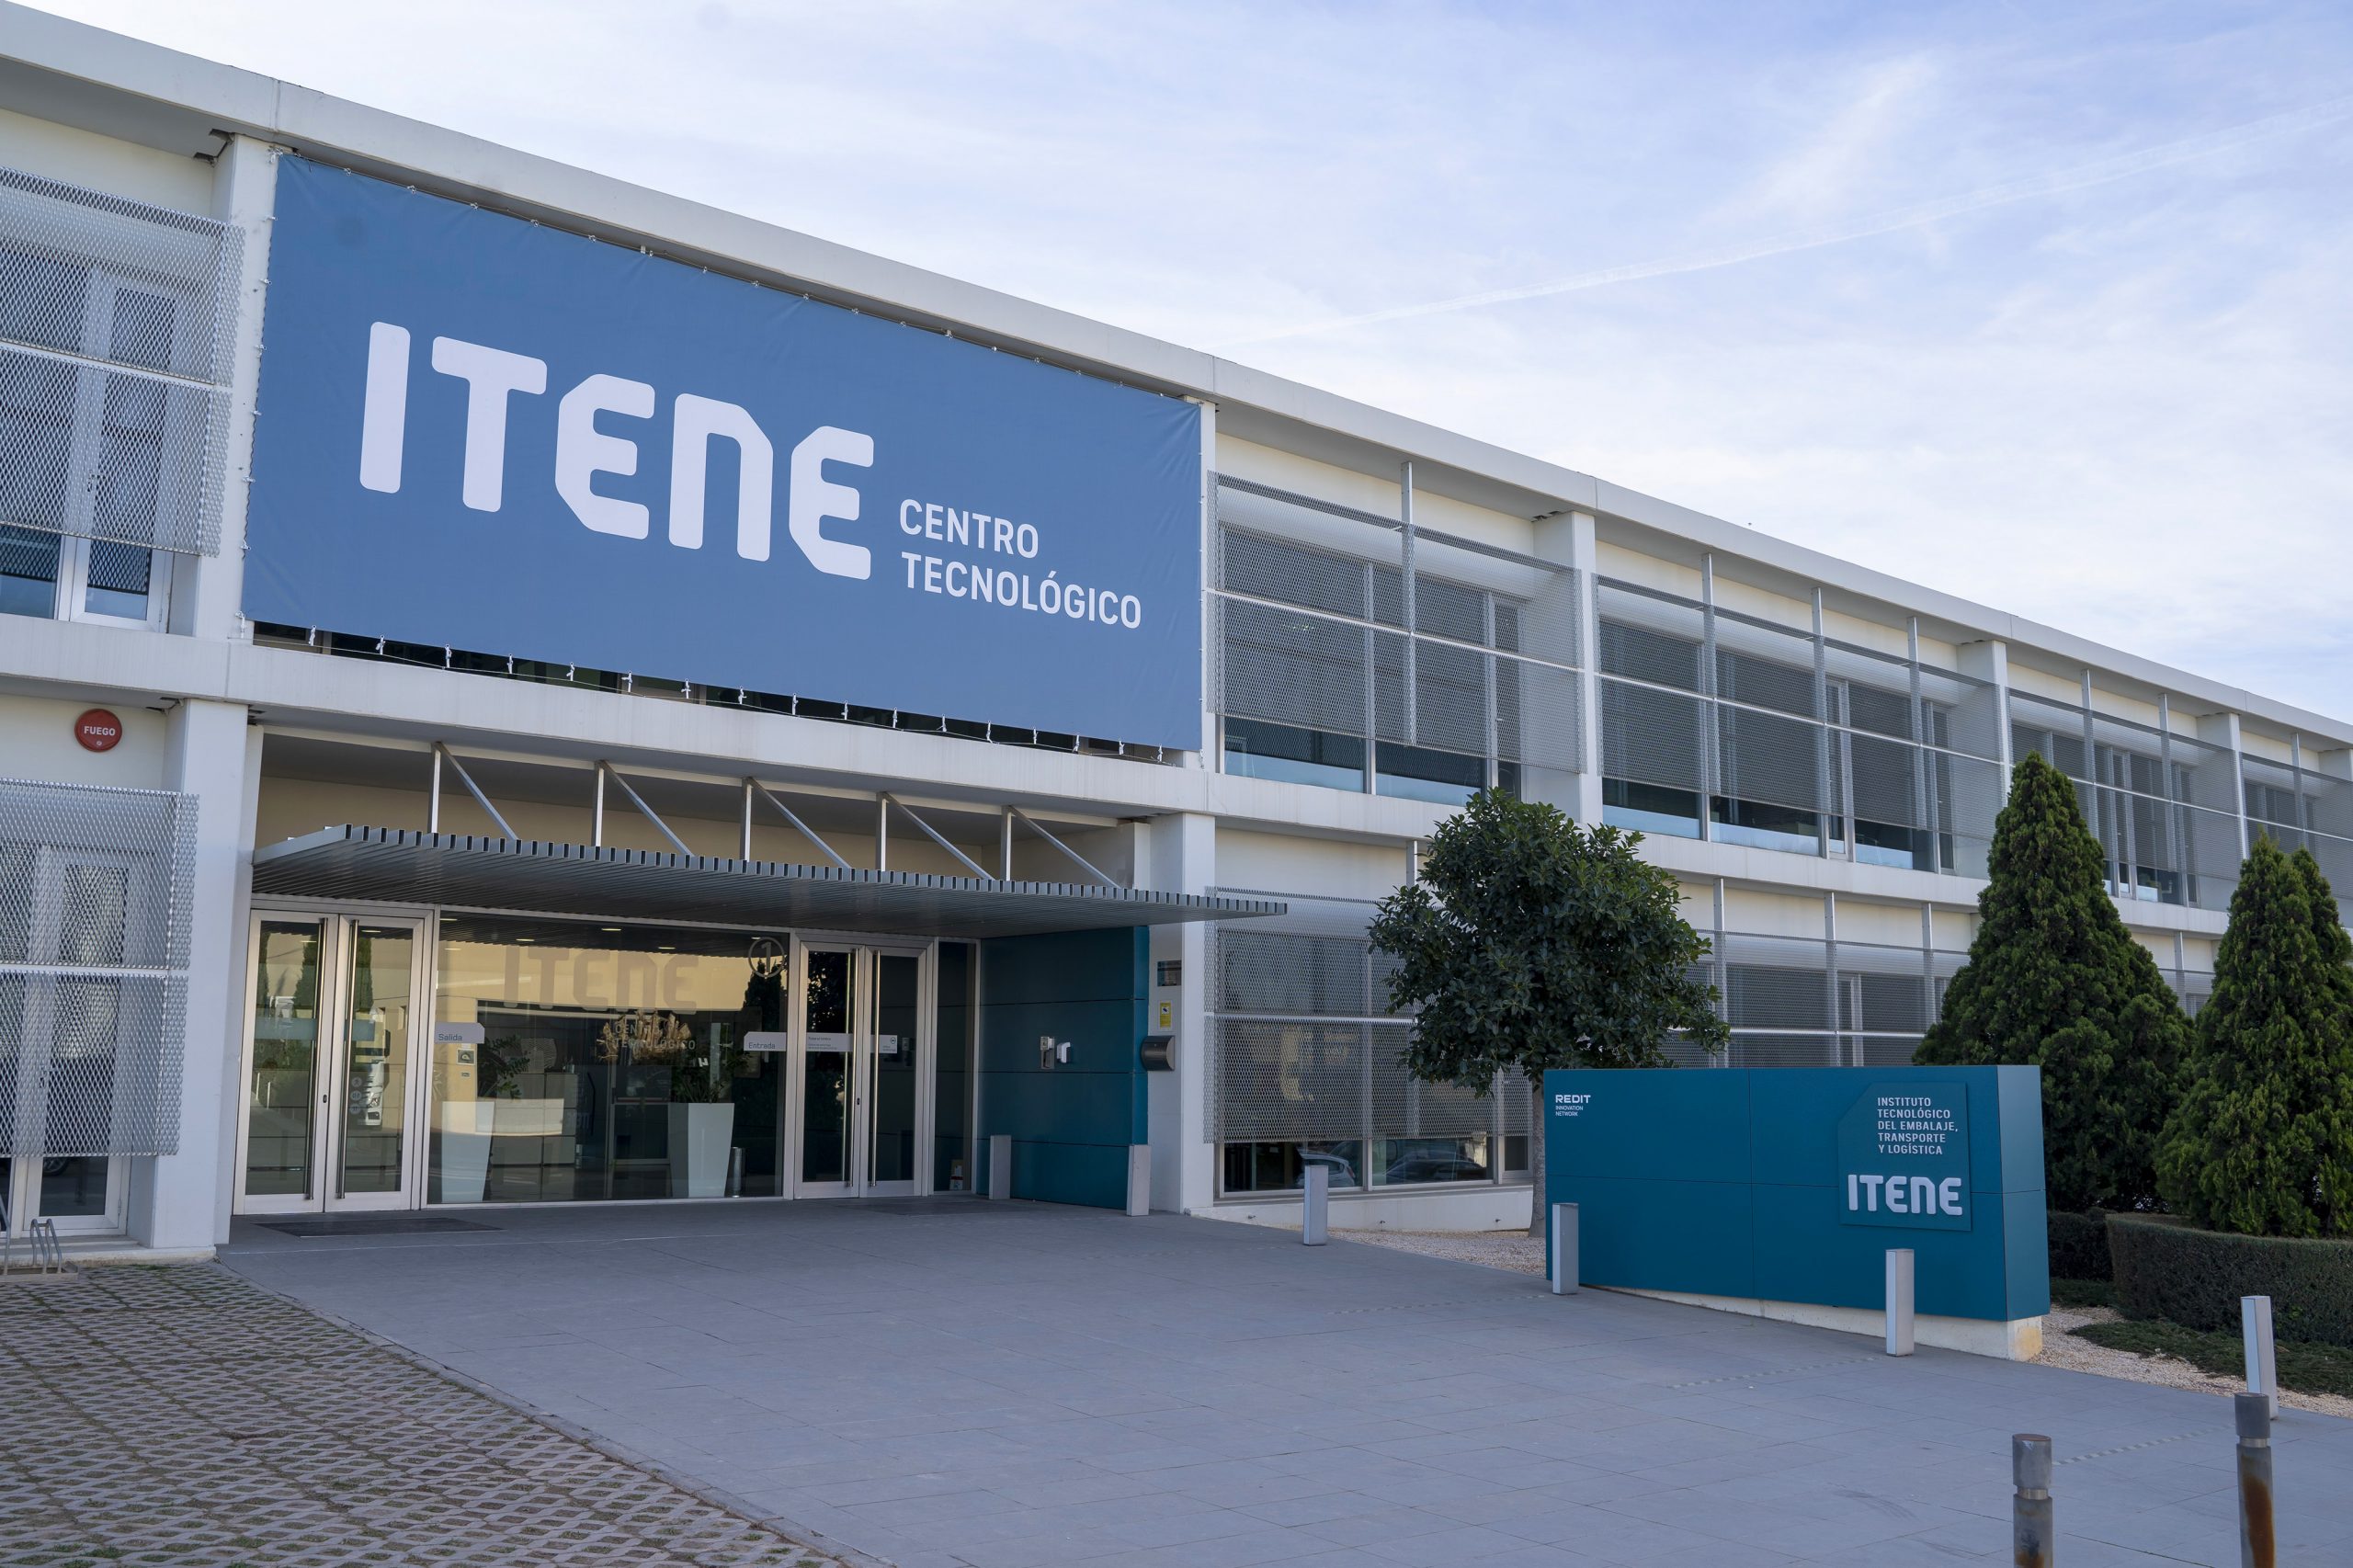 ITENE Research centre